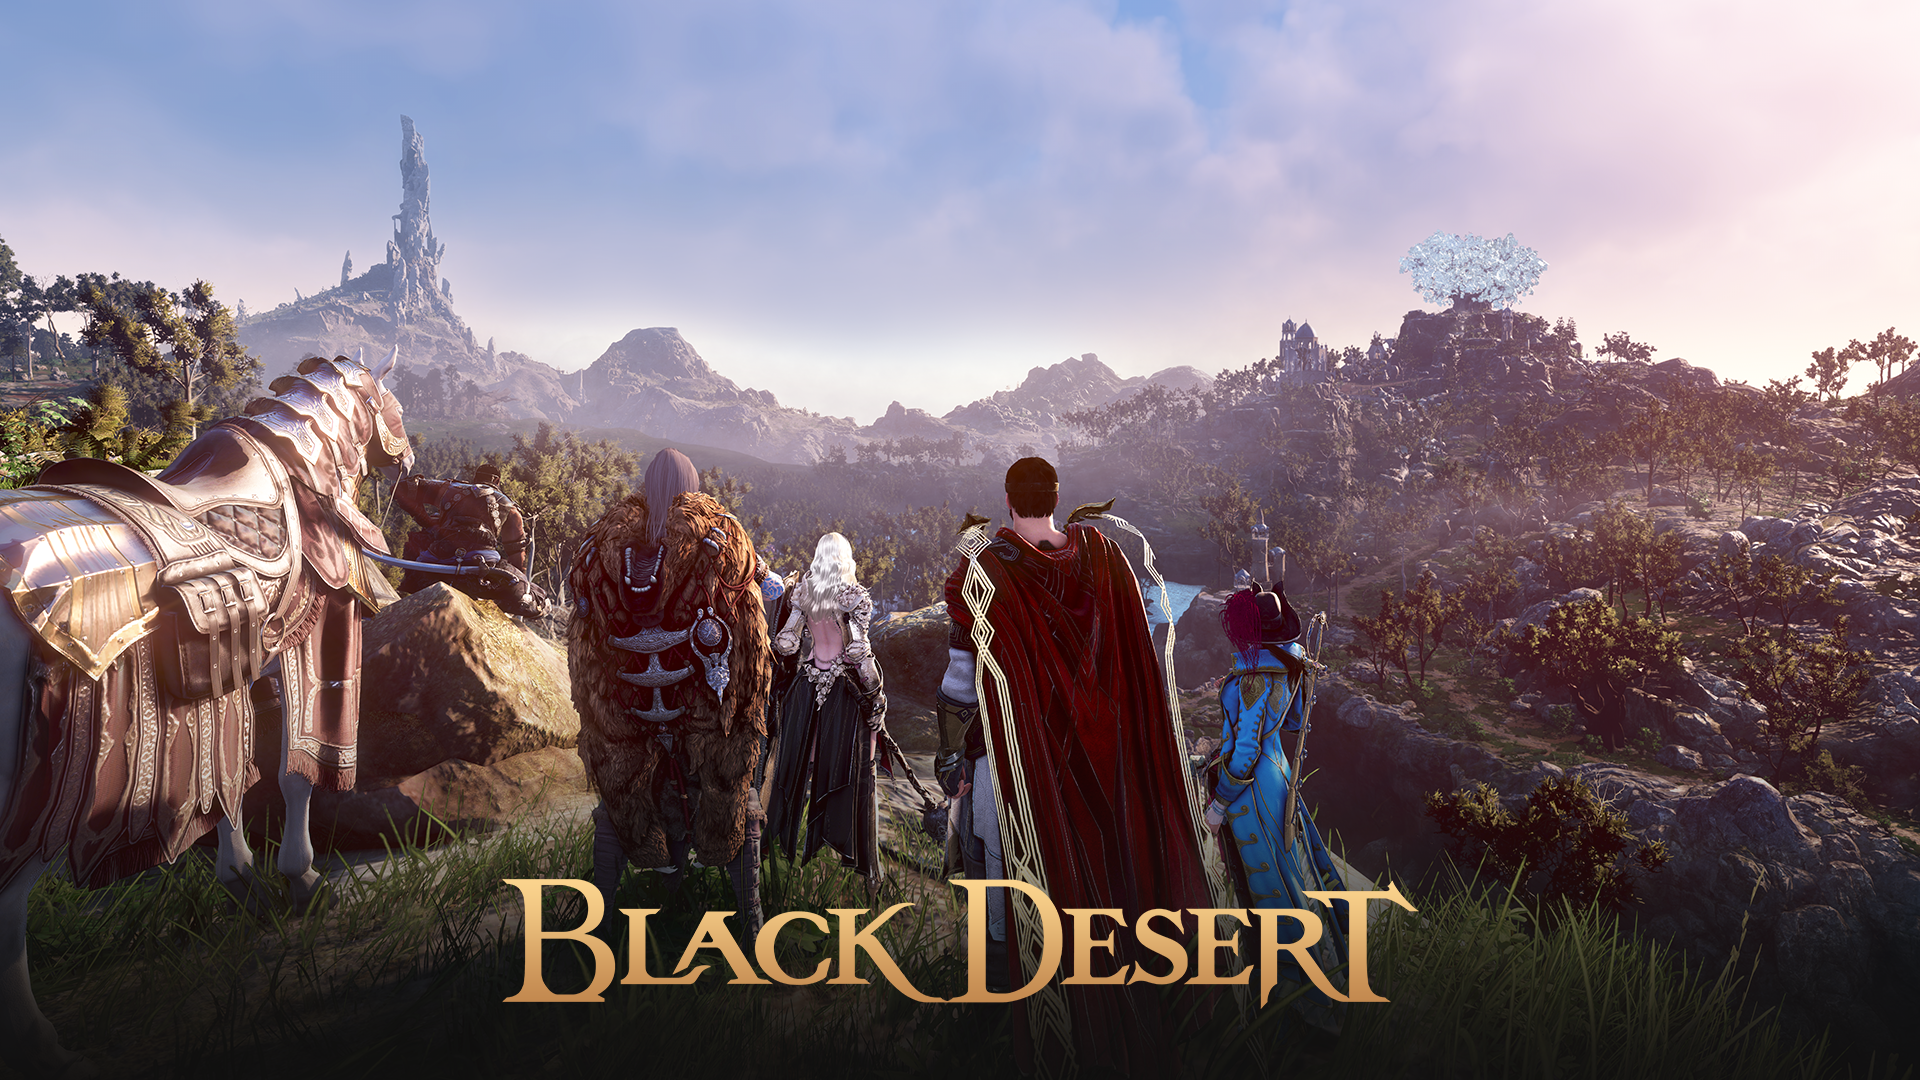 Black Desert ประกาศถึงความสำเร็จของตัวเกมที่สามารถทำสถิติมีผู้เล่นมากถึง 50 ล้านคนทั่วโลก